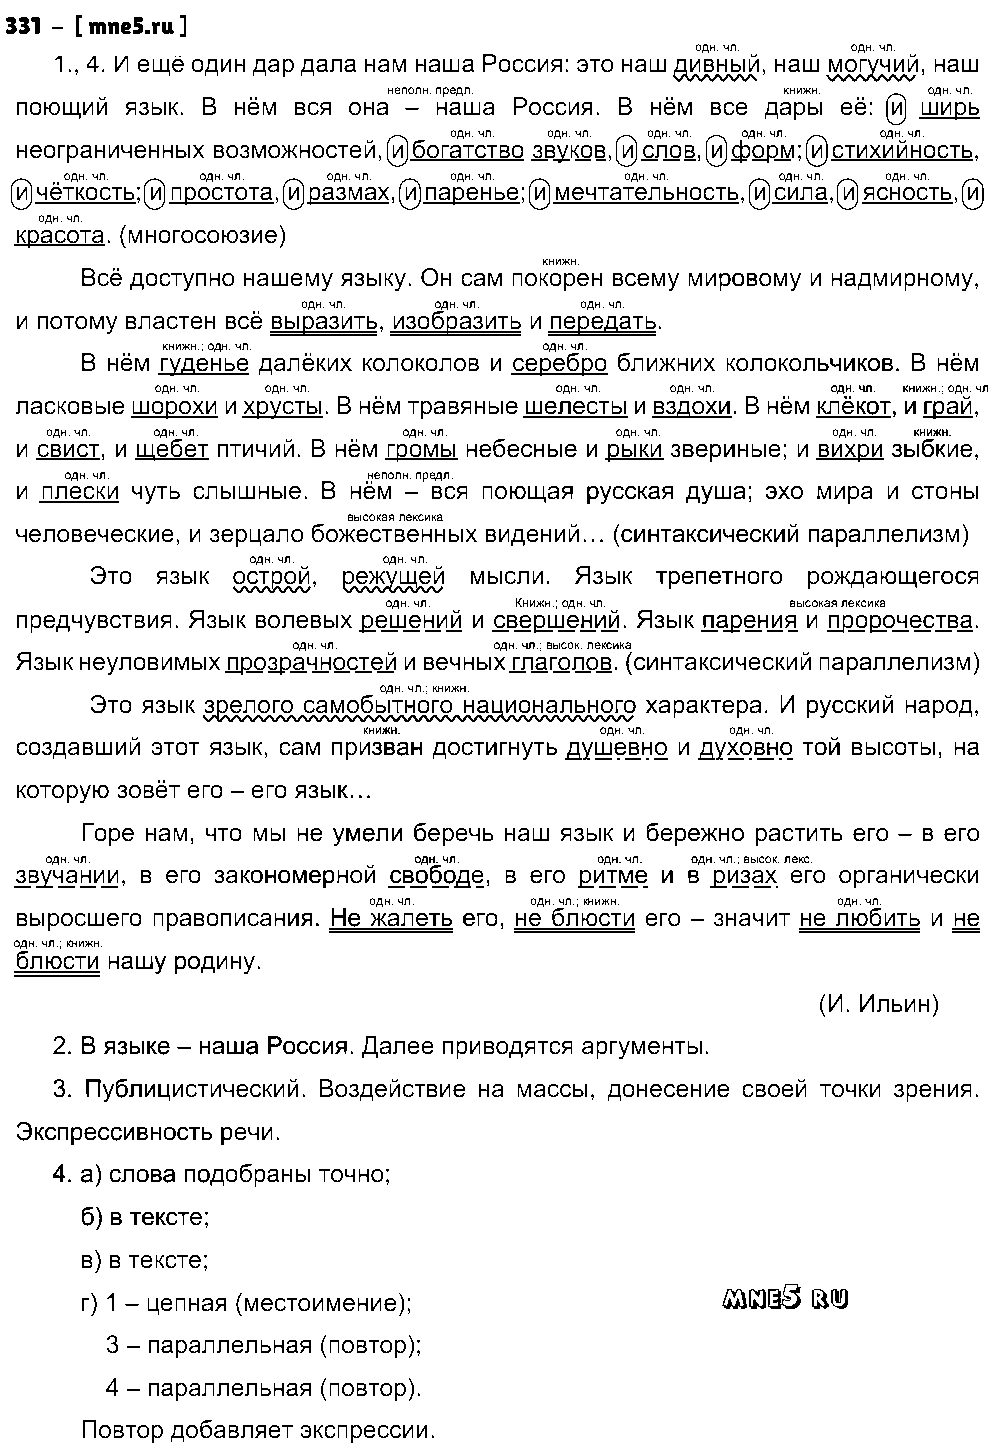 ГДЗ Русский язык 9 класс - 331